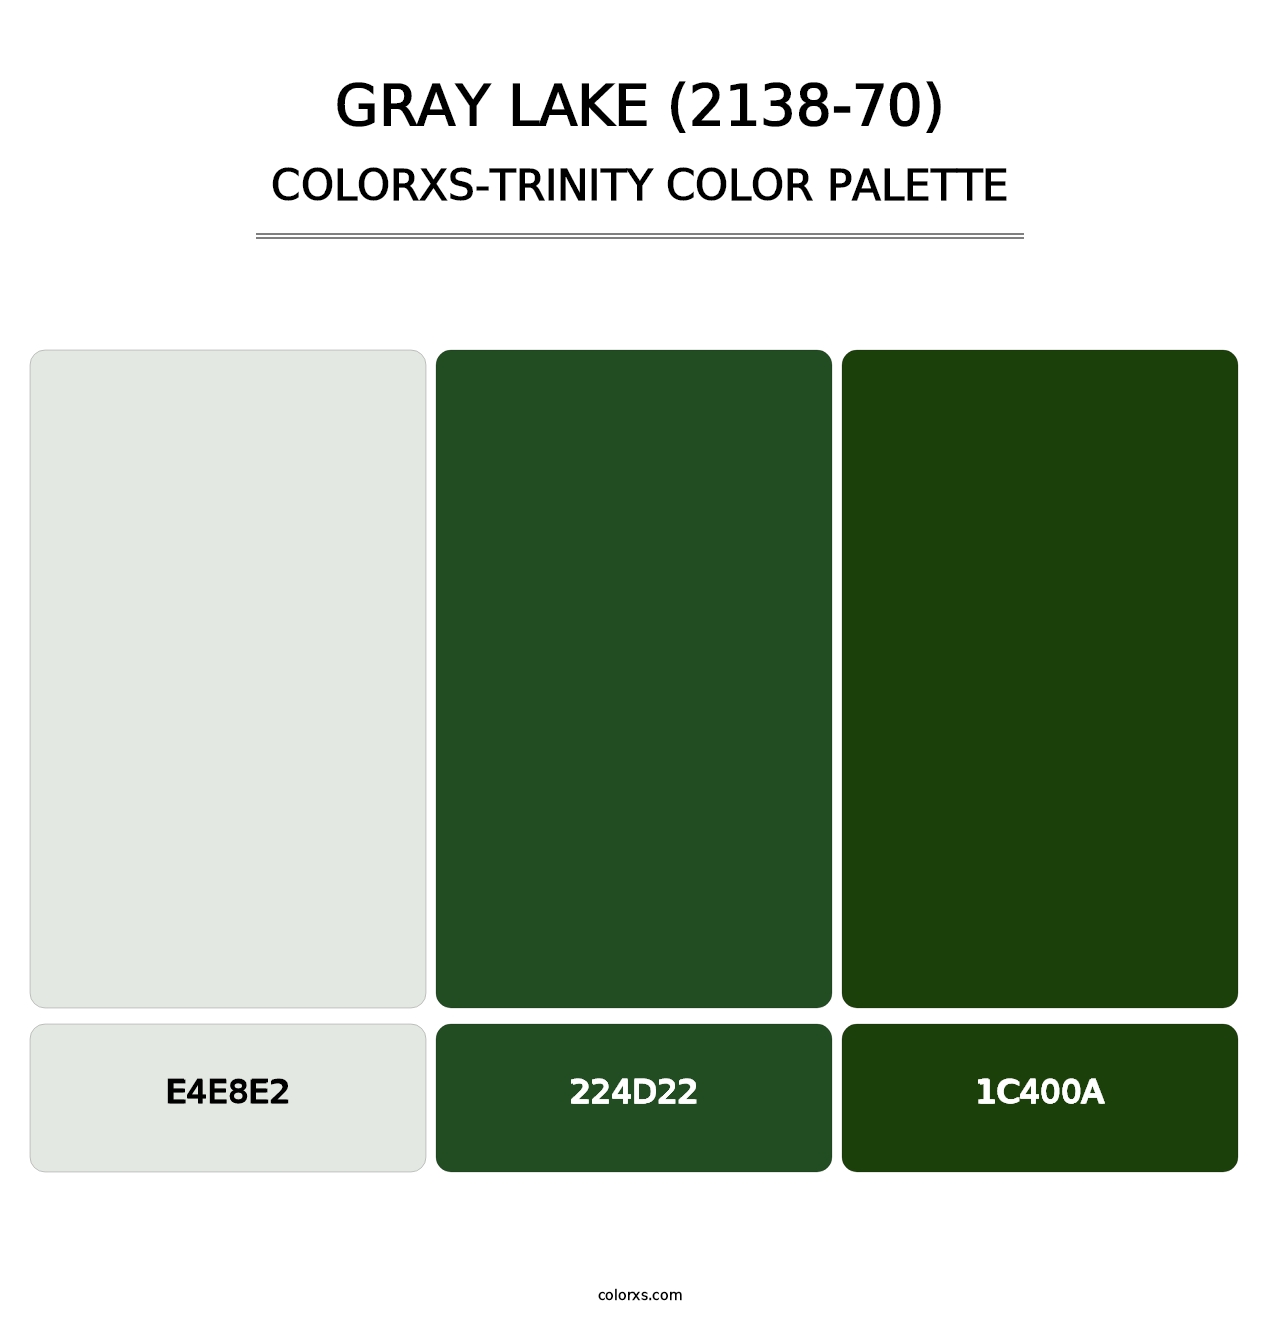 Gray Lake (2138-70) - Colorxs Trinity Palette